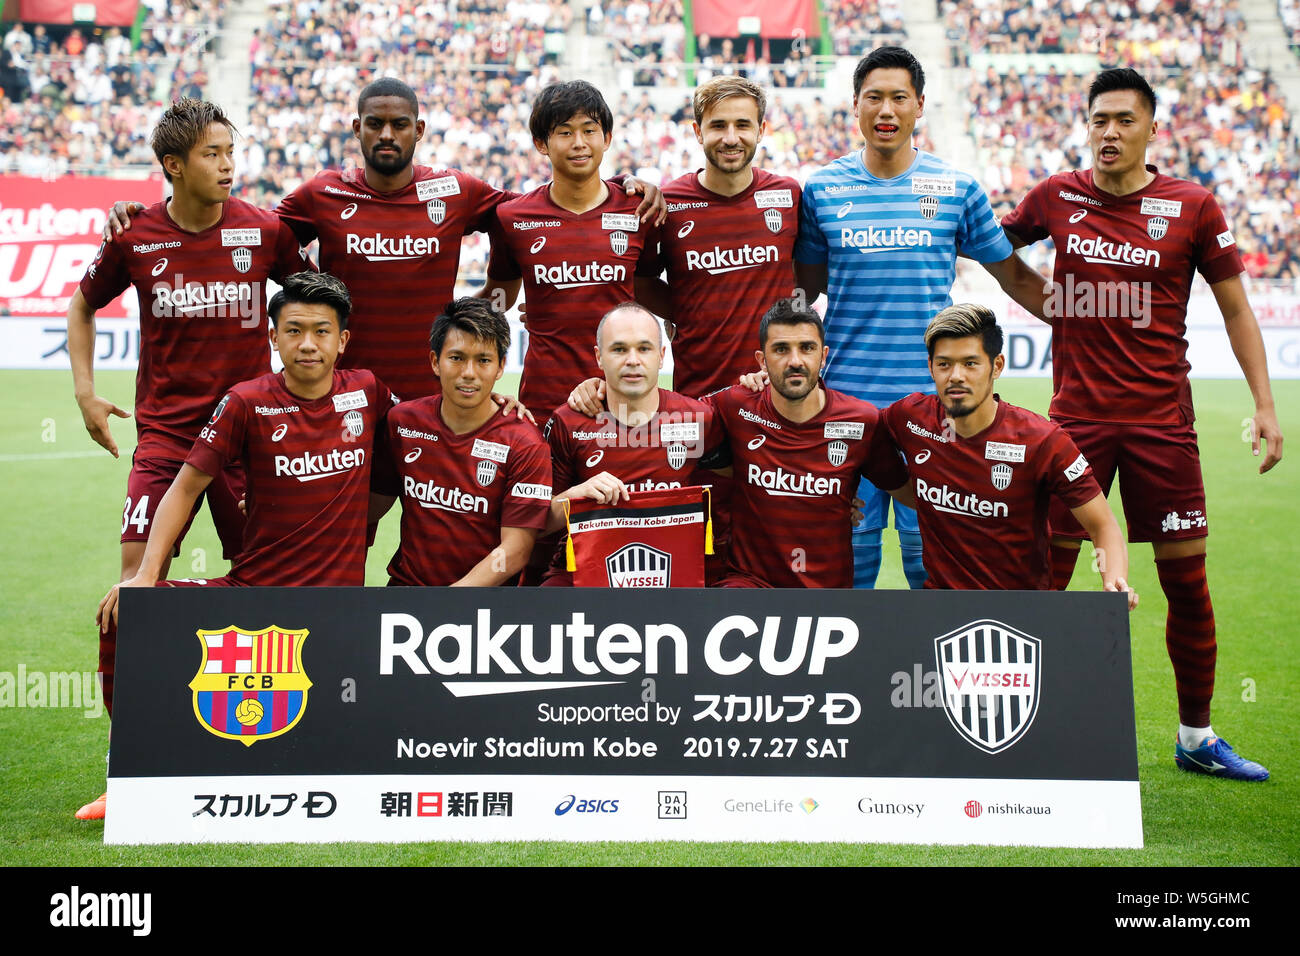 FC Barcelona play, partner with Vissel Kobe in Rakuten Cup finale